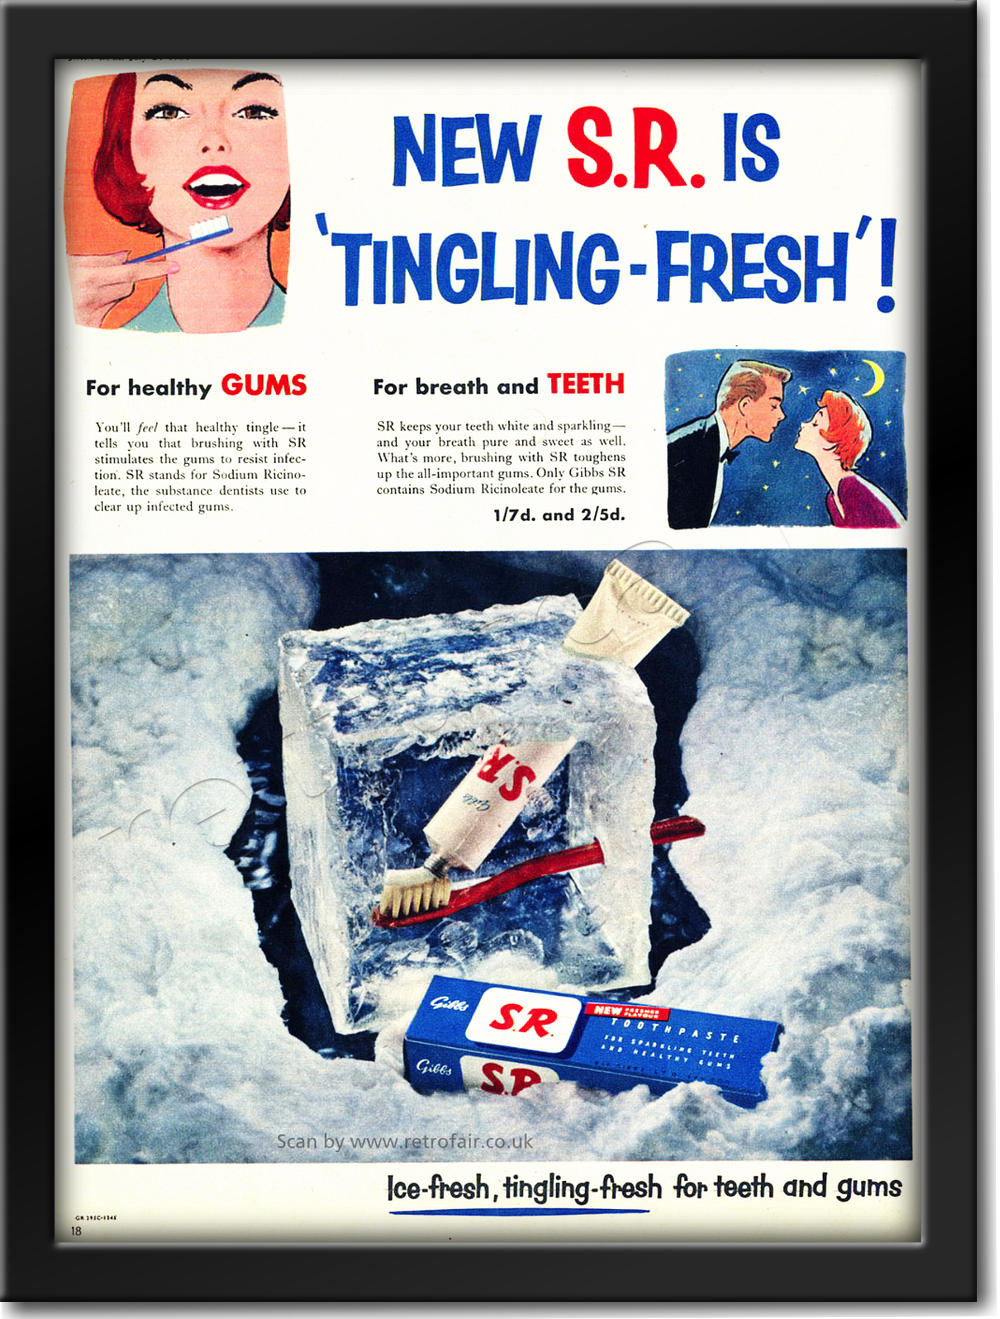 1954 vintage SR Toothpaste ad